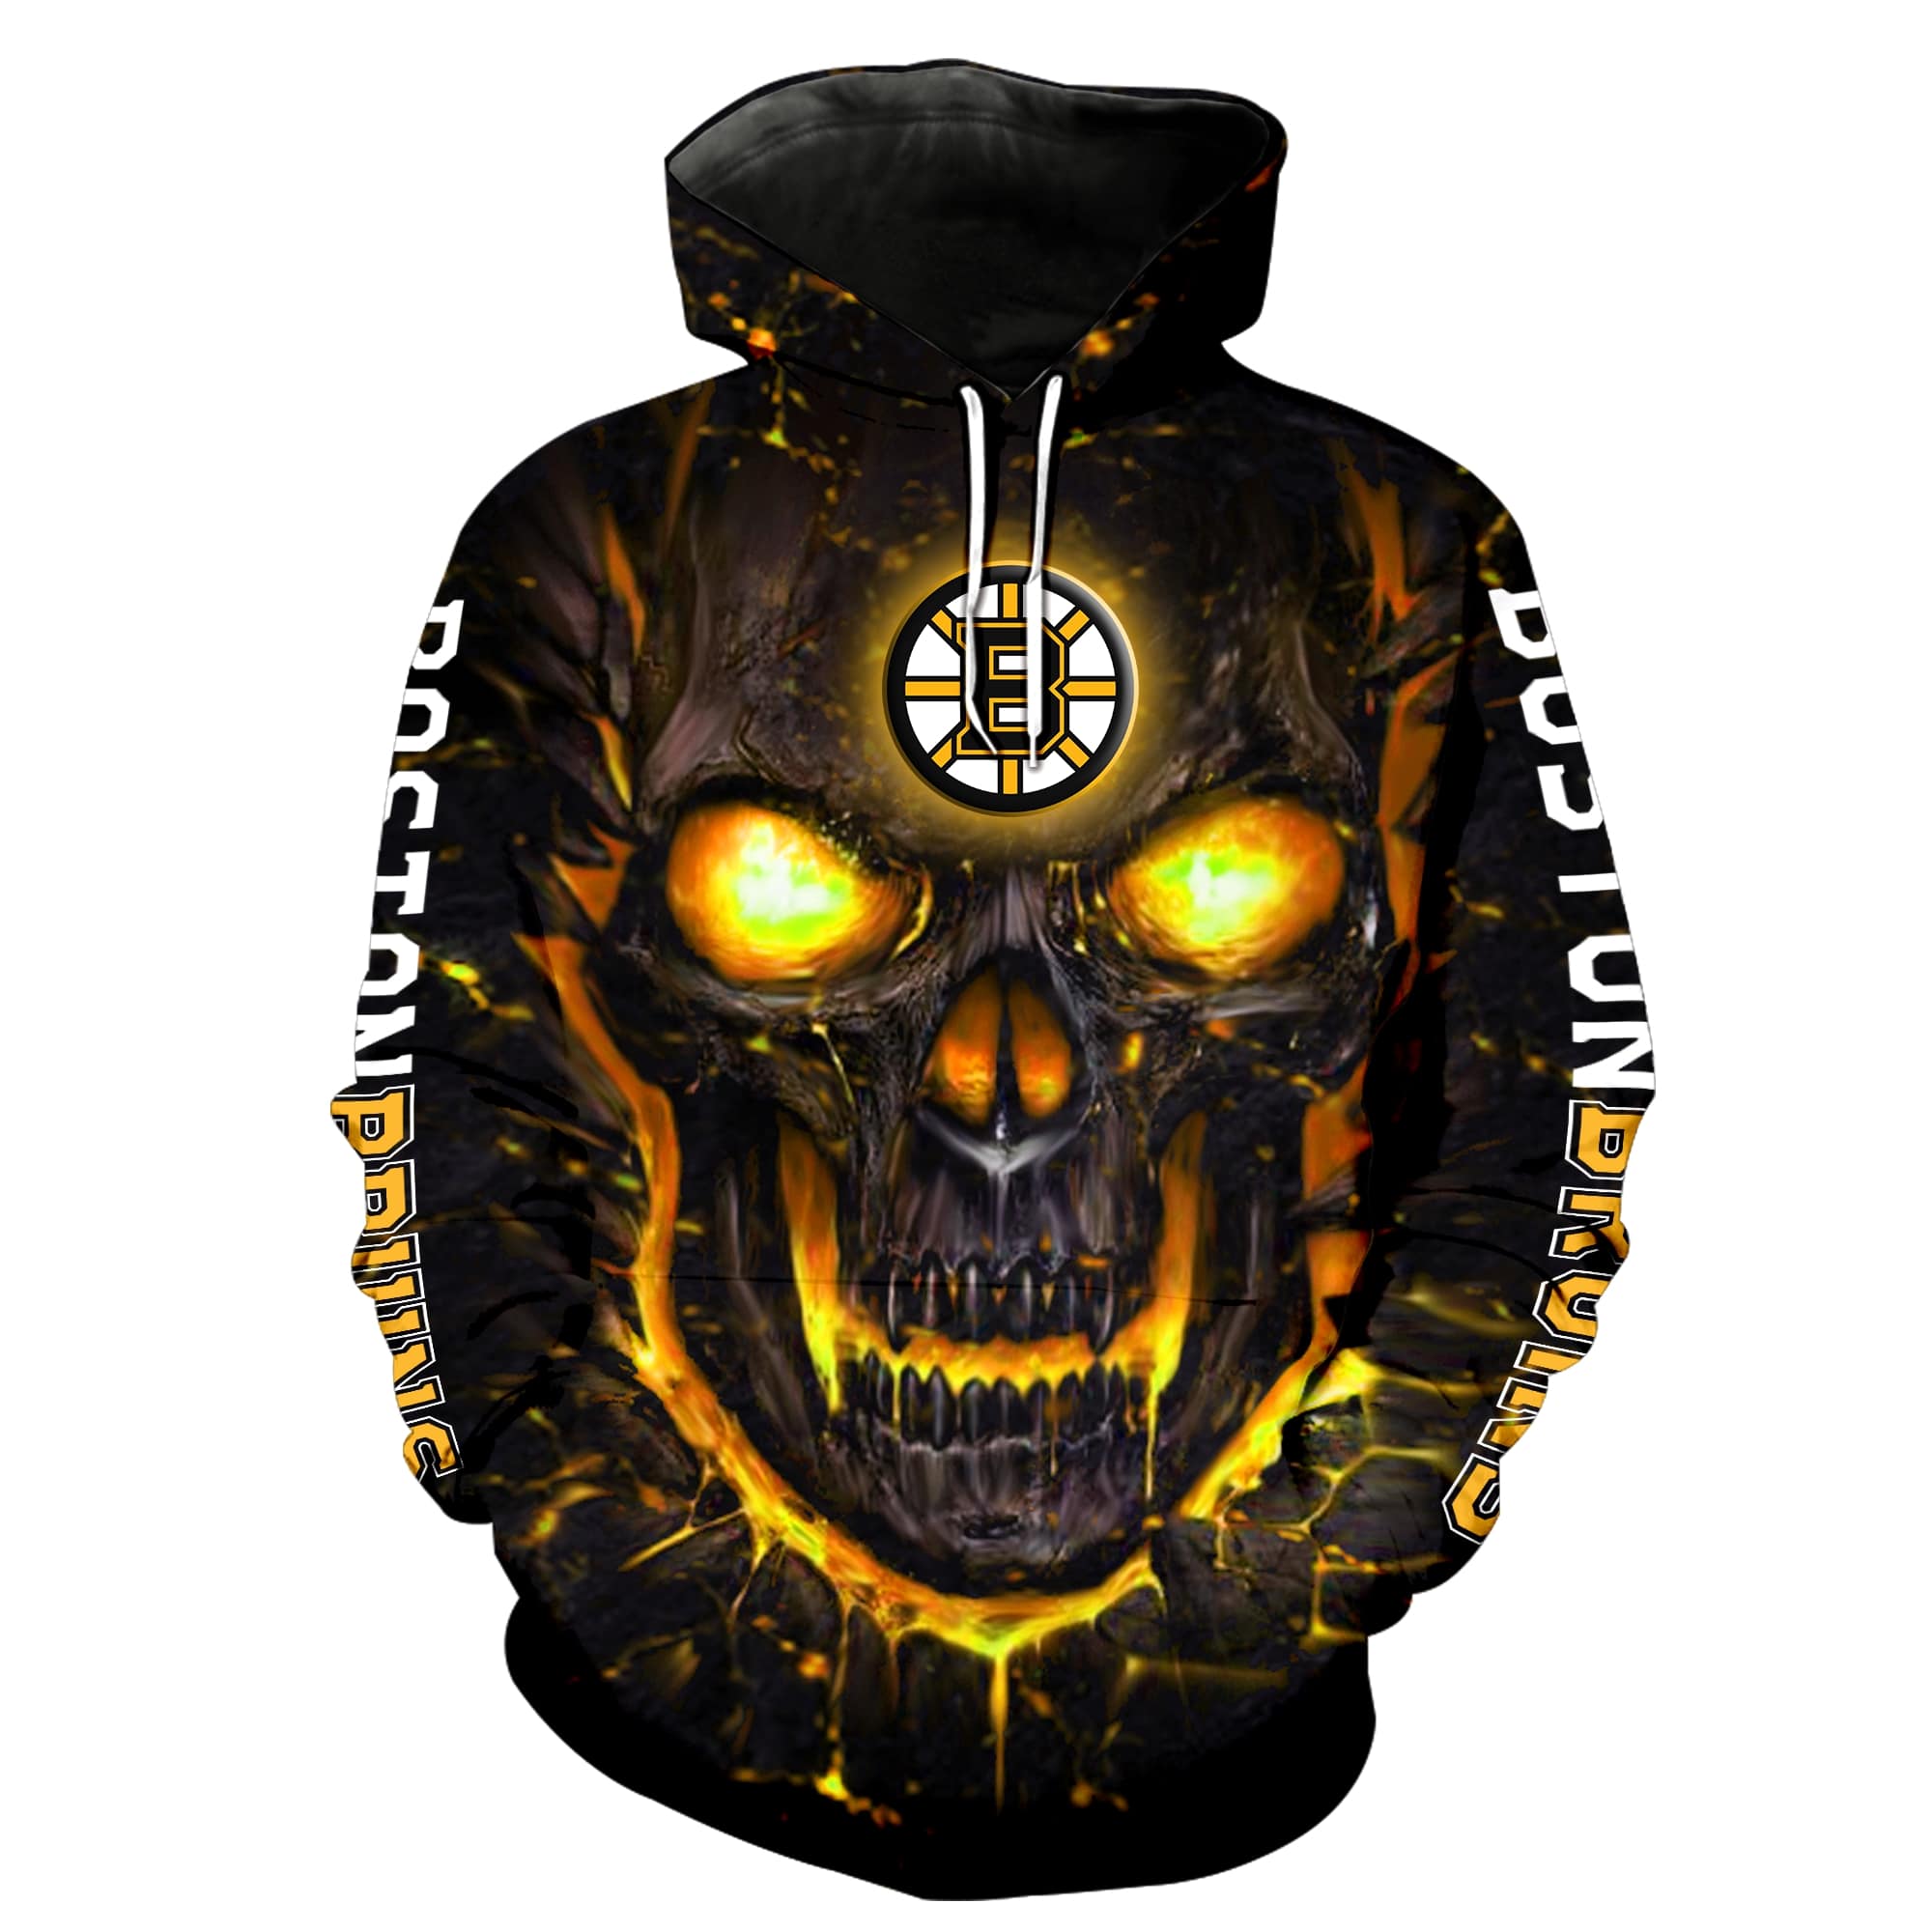 Lava skull boston bruins full over printed hoodie